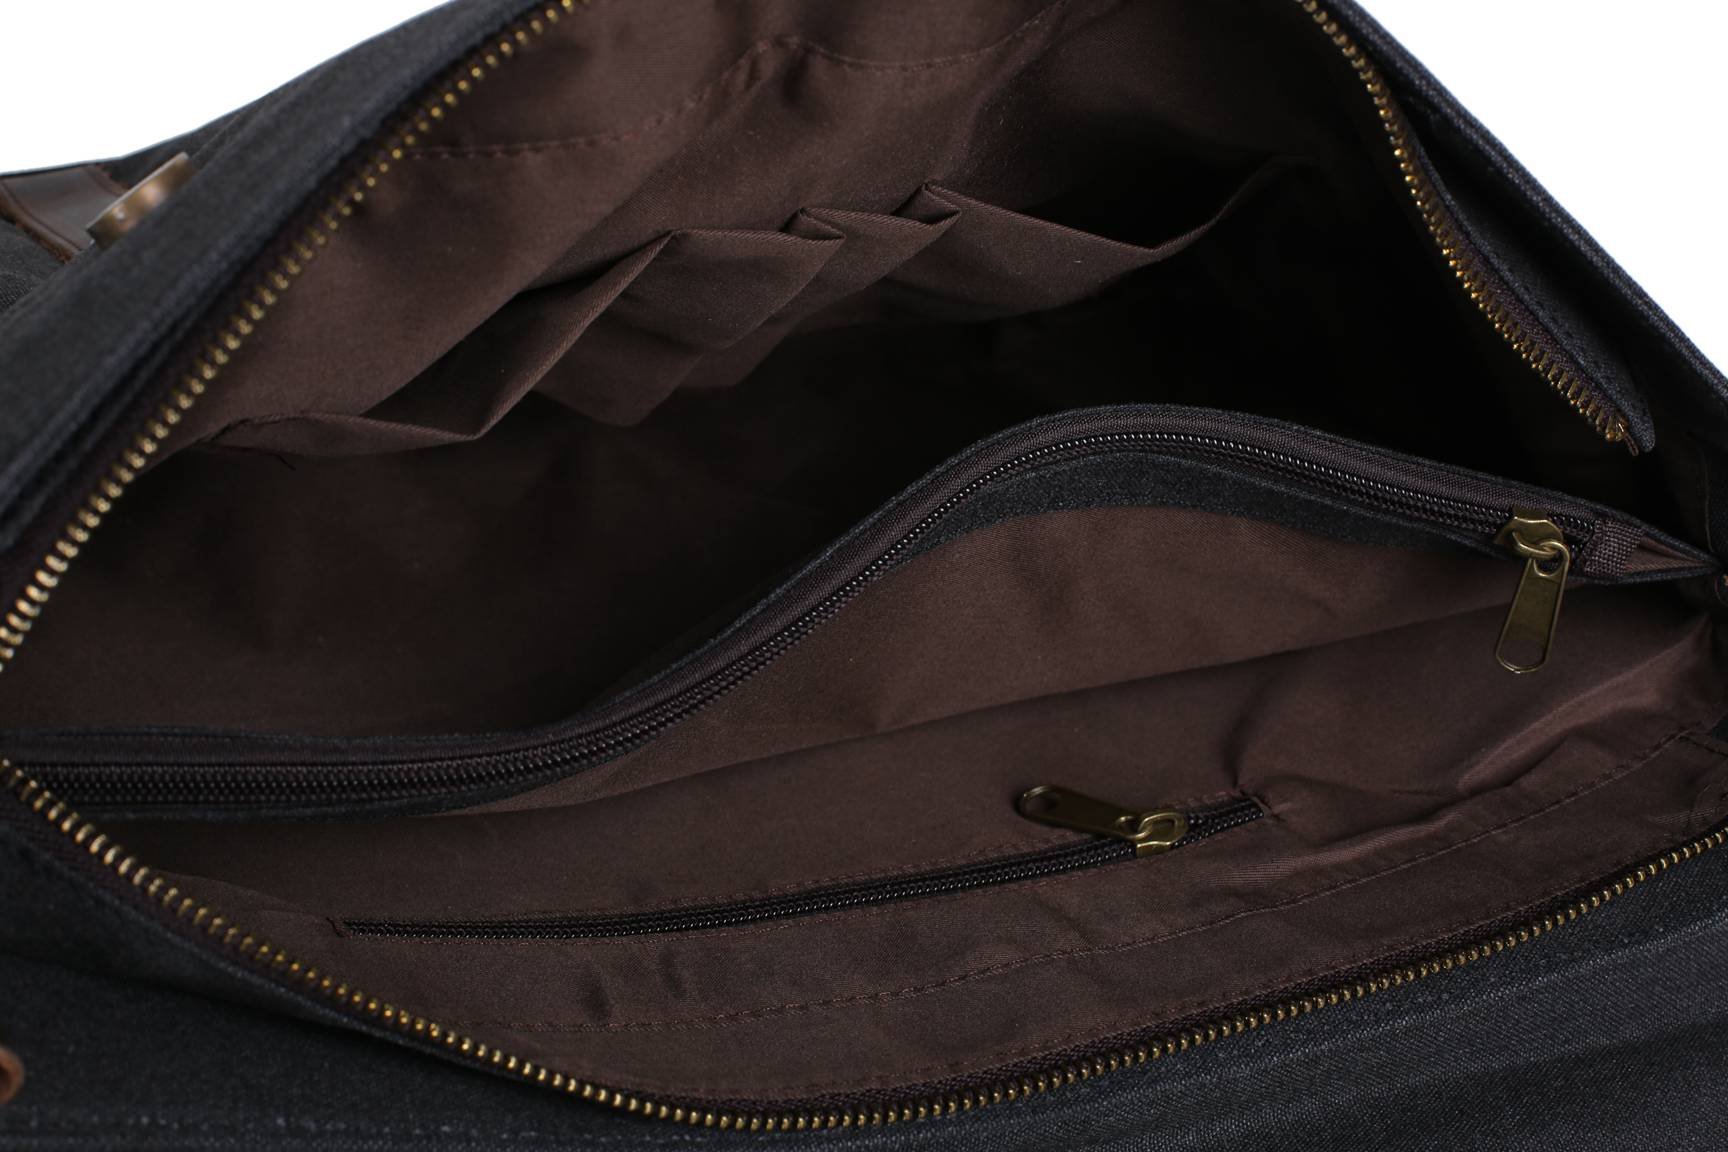 Canvas Leather Bag Briefcase Bag Messenger Bag Shoulder Bag Laptop Bag ...